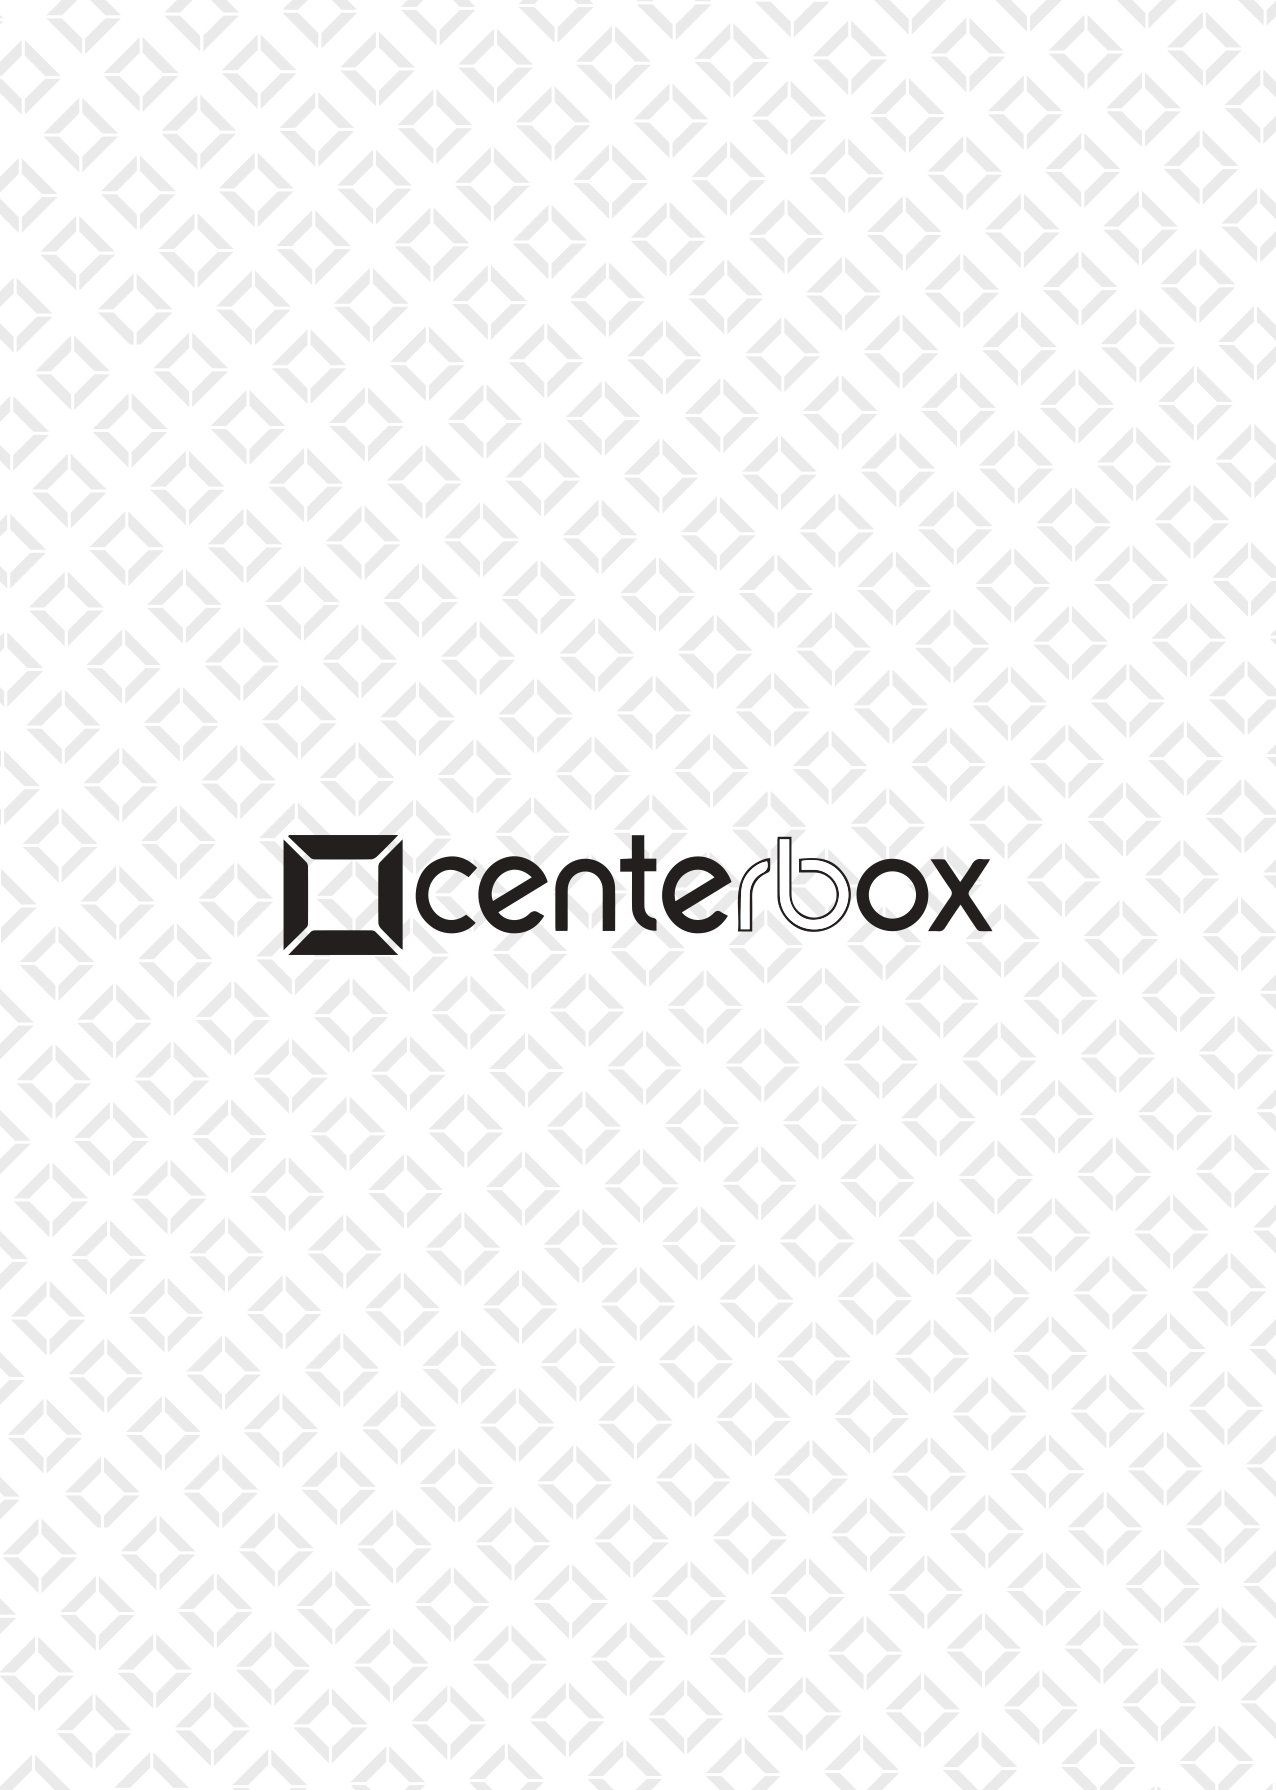 Company profile di Centerbox, produttore di scatole fasciate